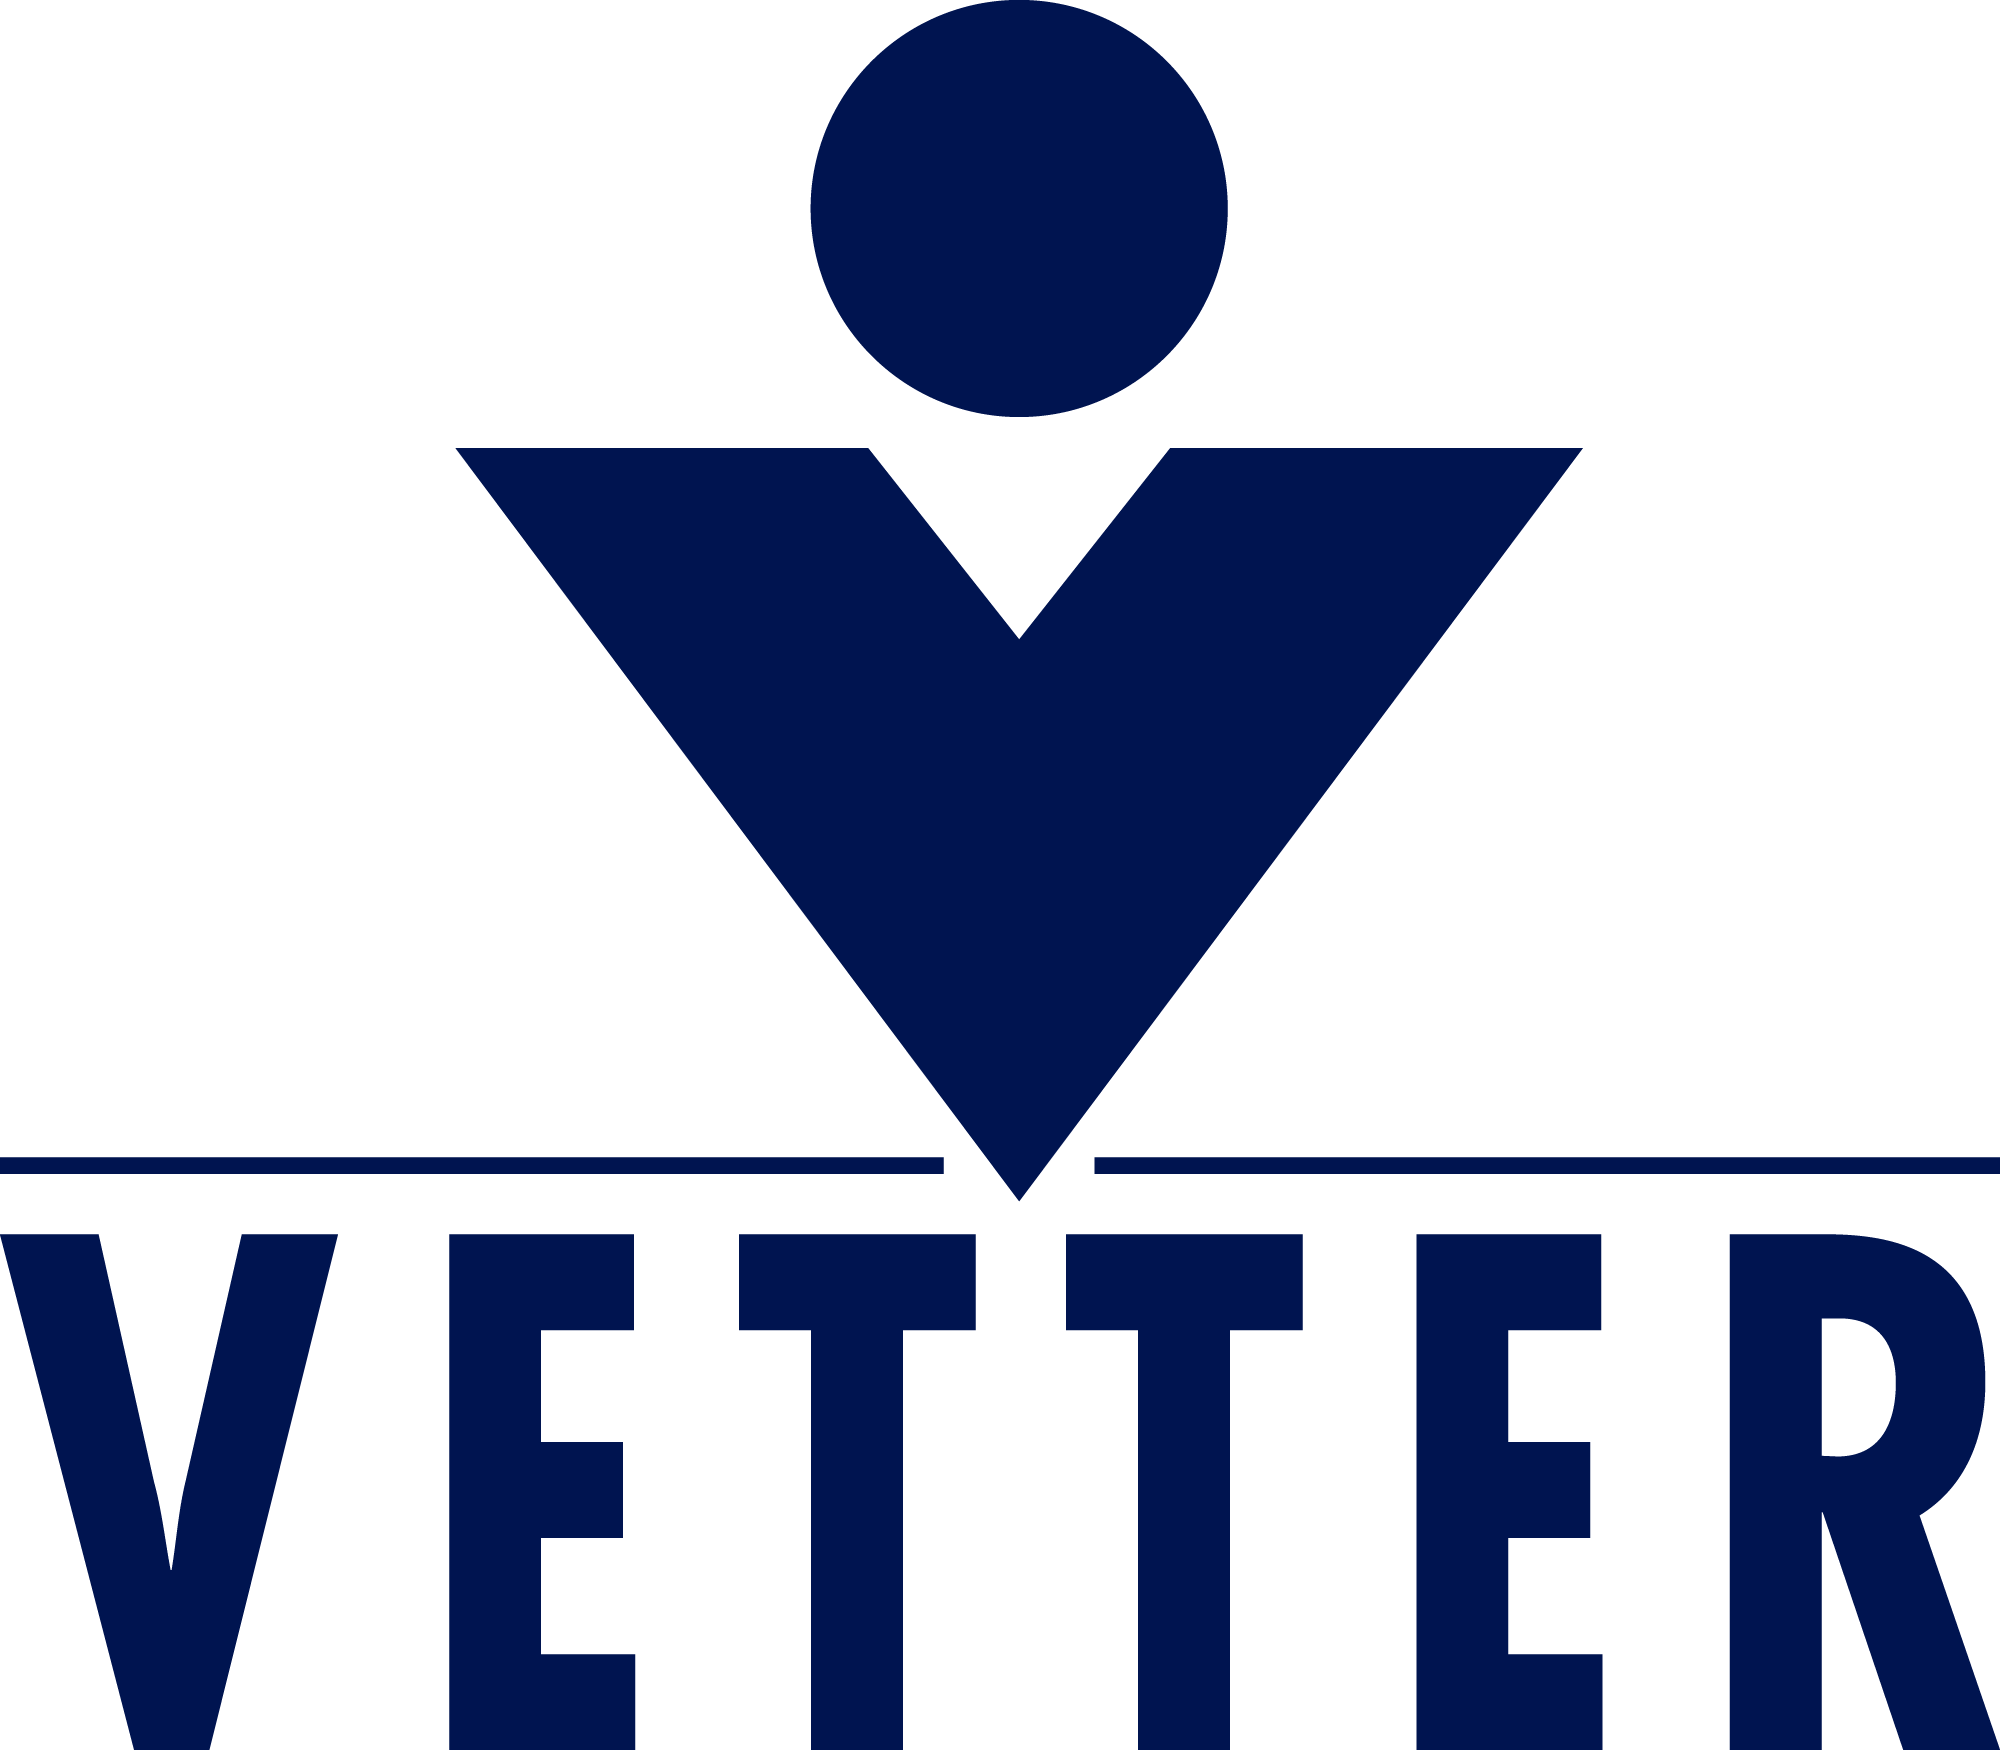 Logo for Vetter Pharma International GmbH